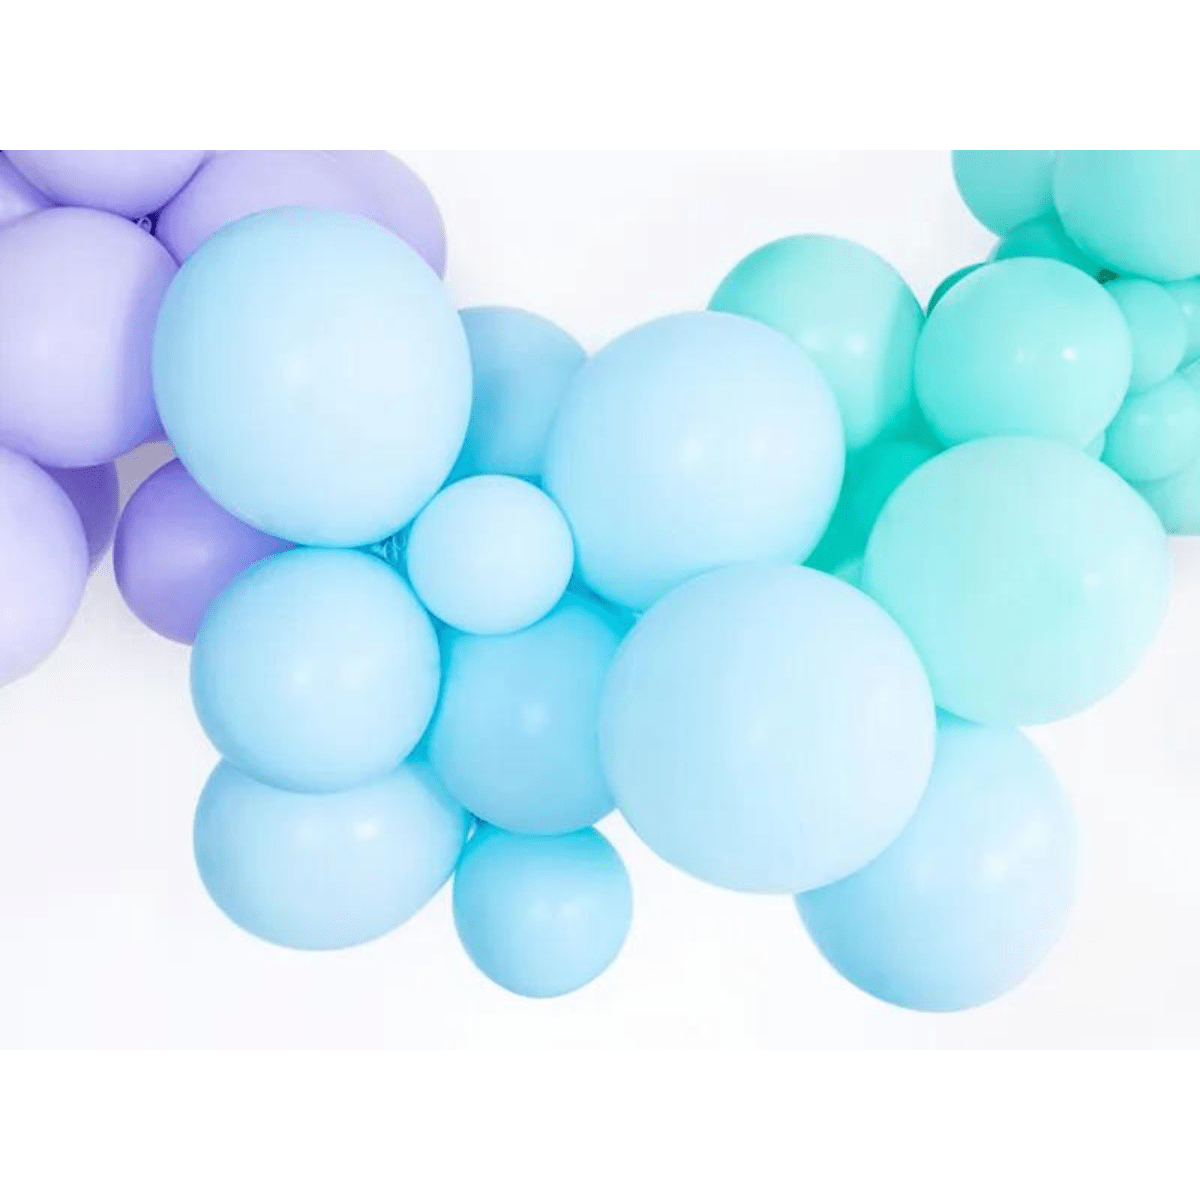 Ballonger Pastell Lyseblå 10stk